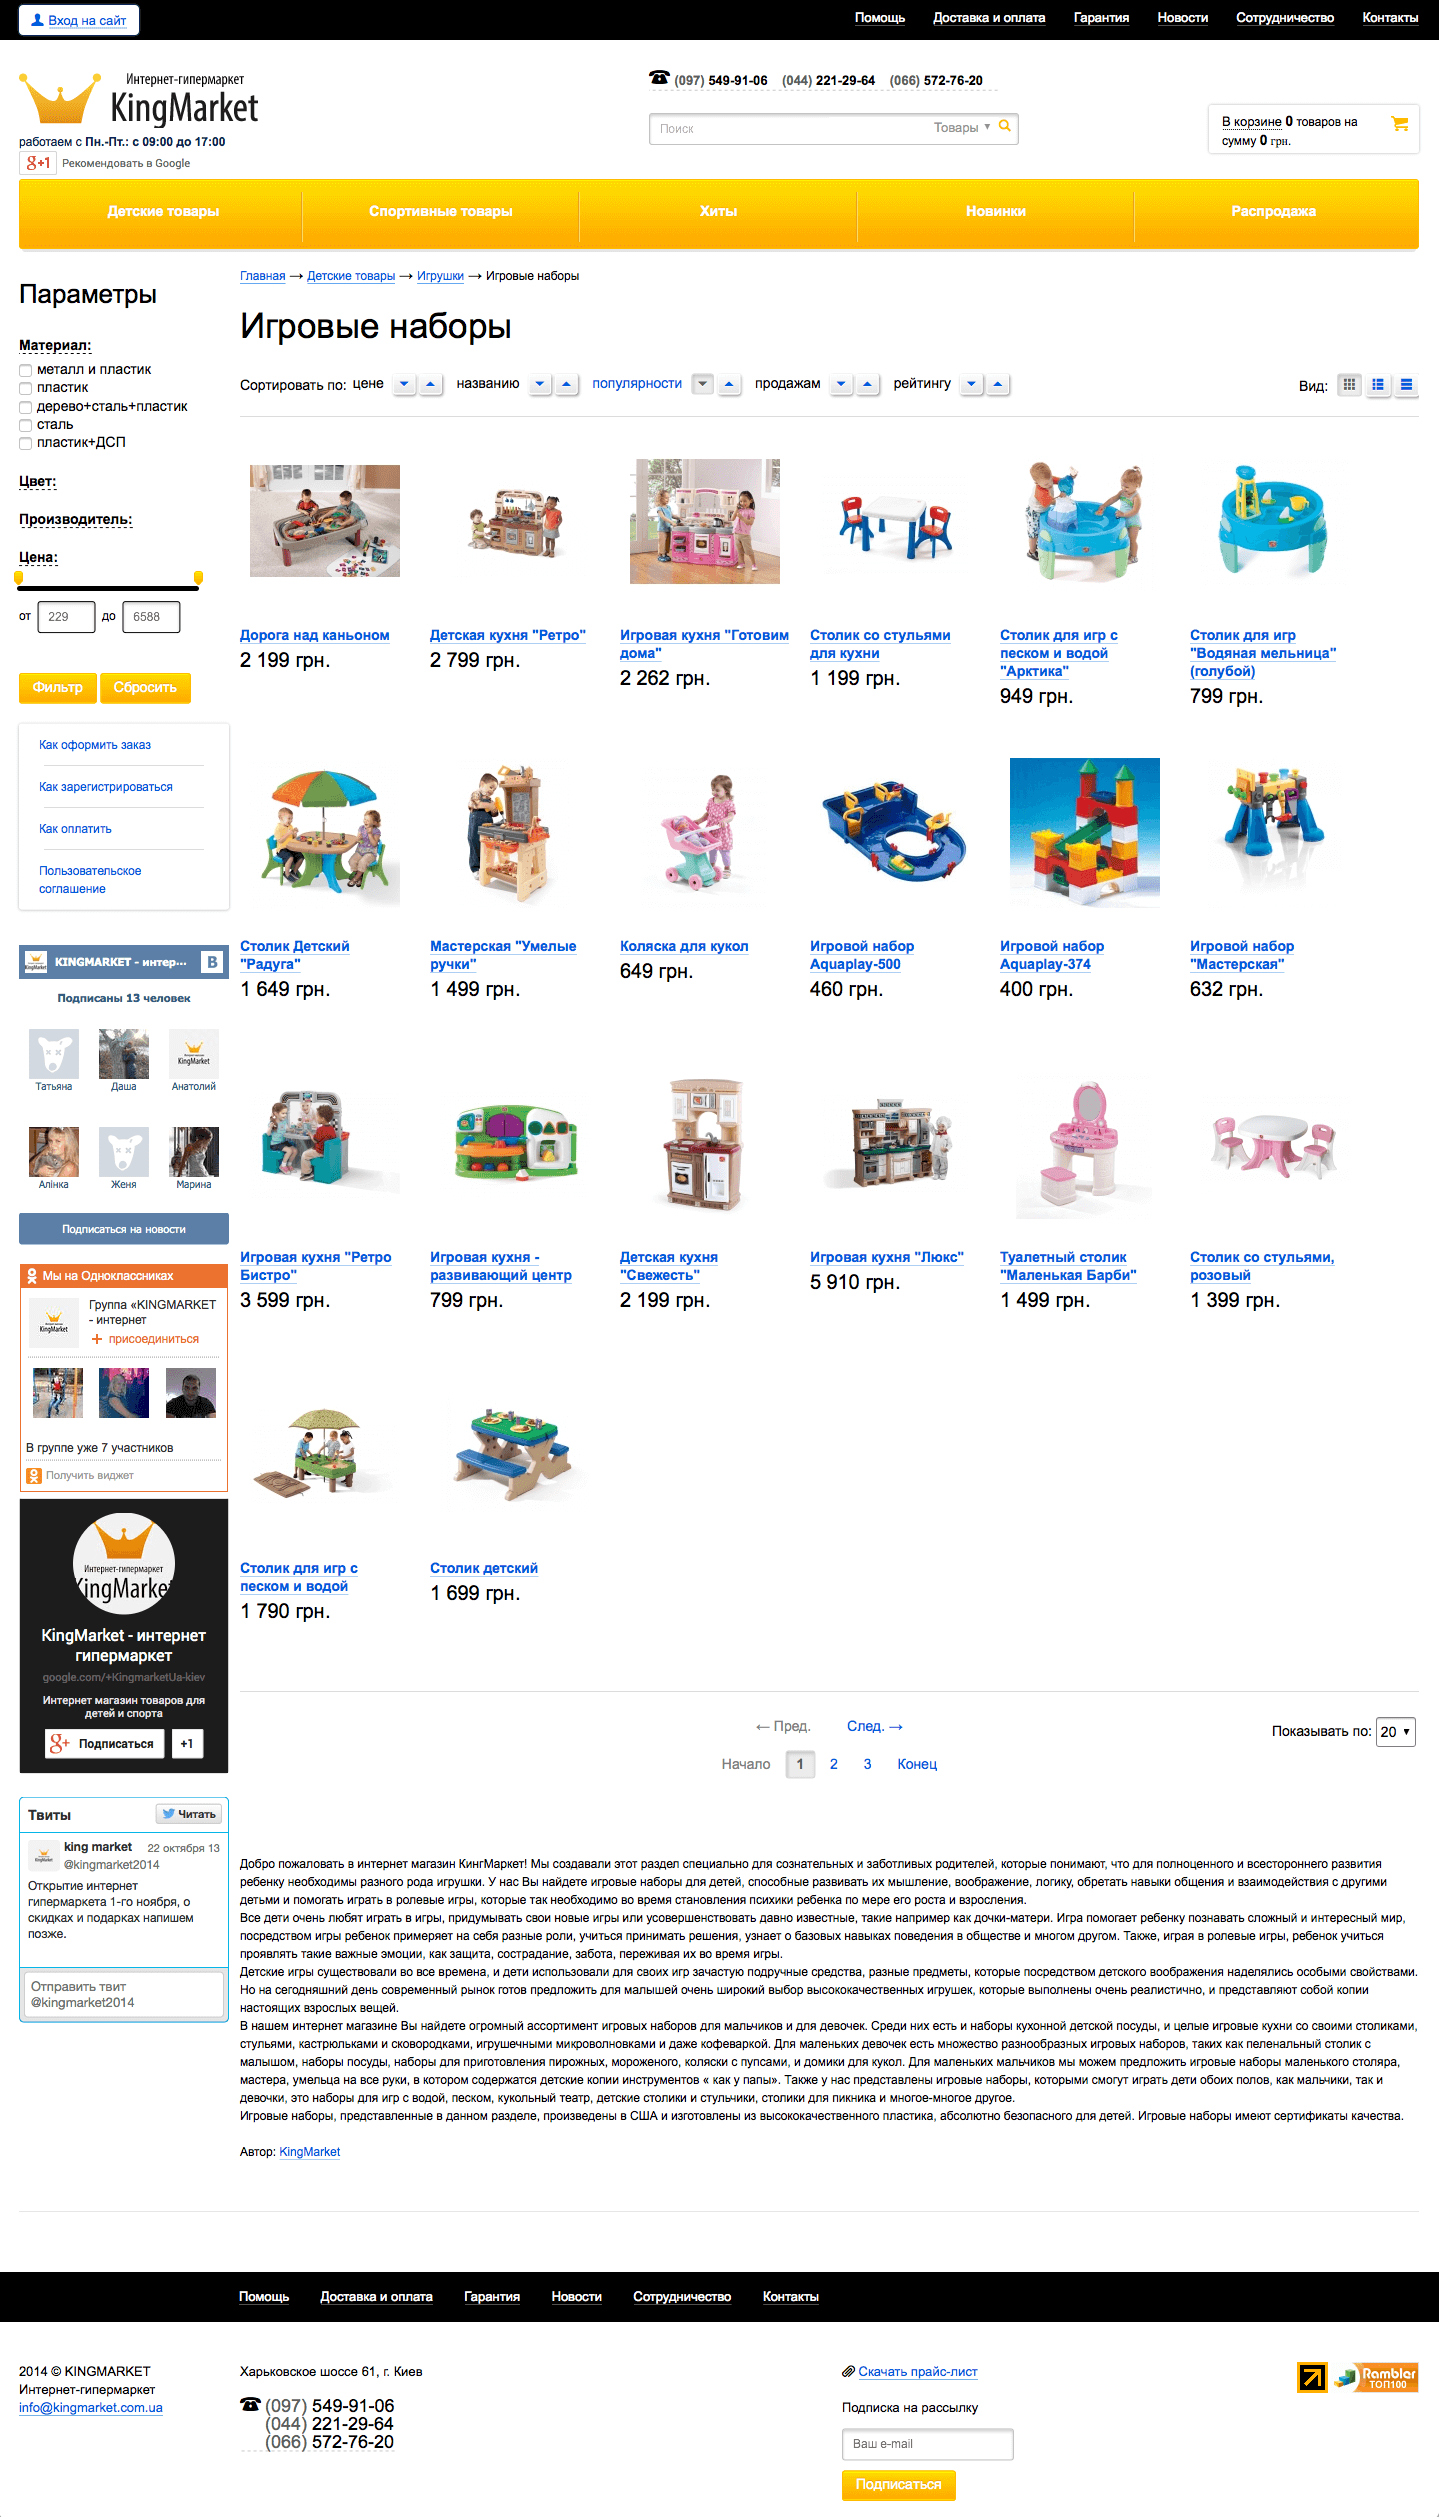 KingMarket - інтернет магазин товарів для дітей та спорту1